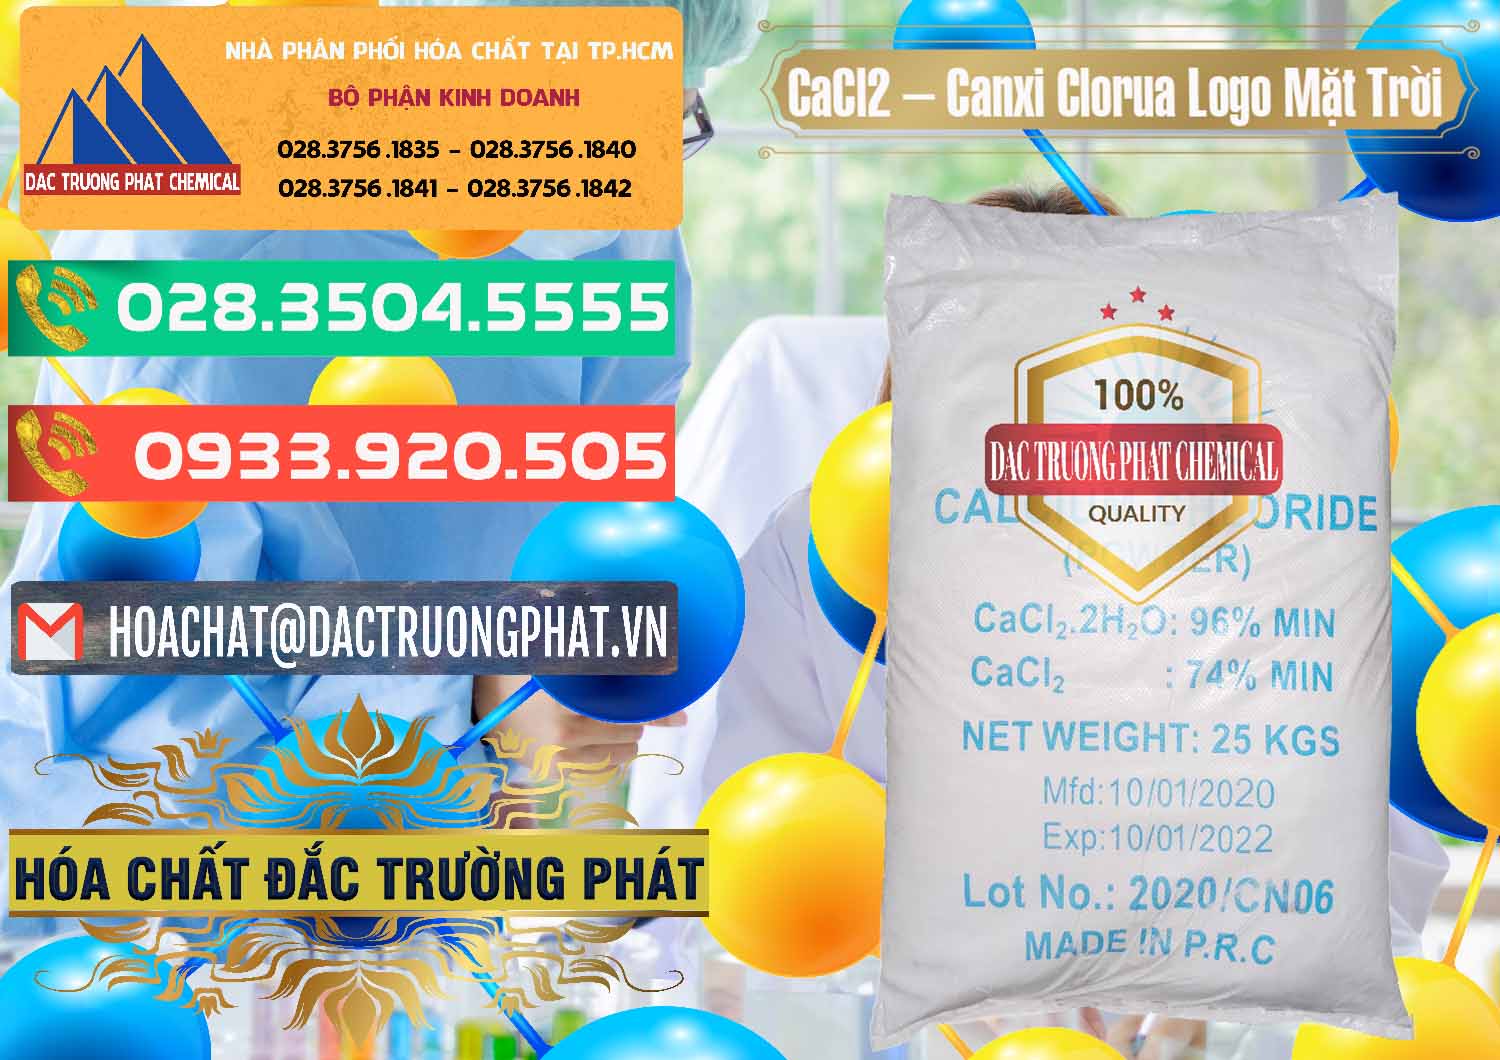 Công ty chuyên cung cấp - bán CaCl2 – Canxi Clorua 96% Logo Mặt Trời Trung Quốc China - 0041 - Cty phân phối ( cung cấp ) hóa chất tại TP.HCM - congtyhoachat.com.vn